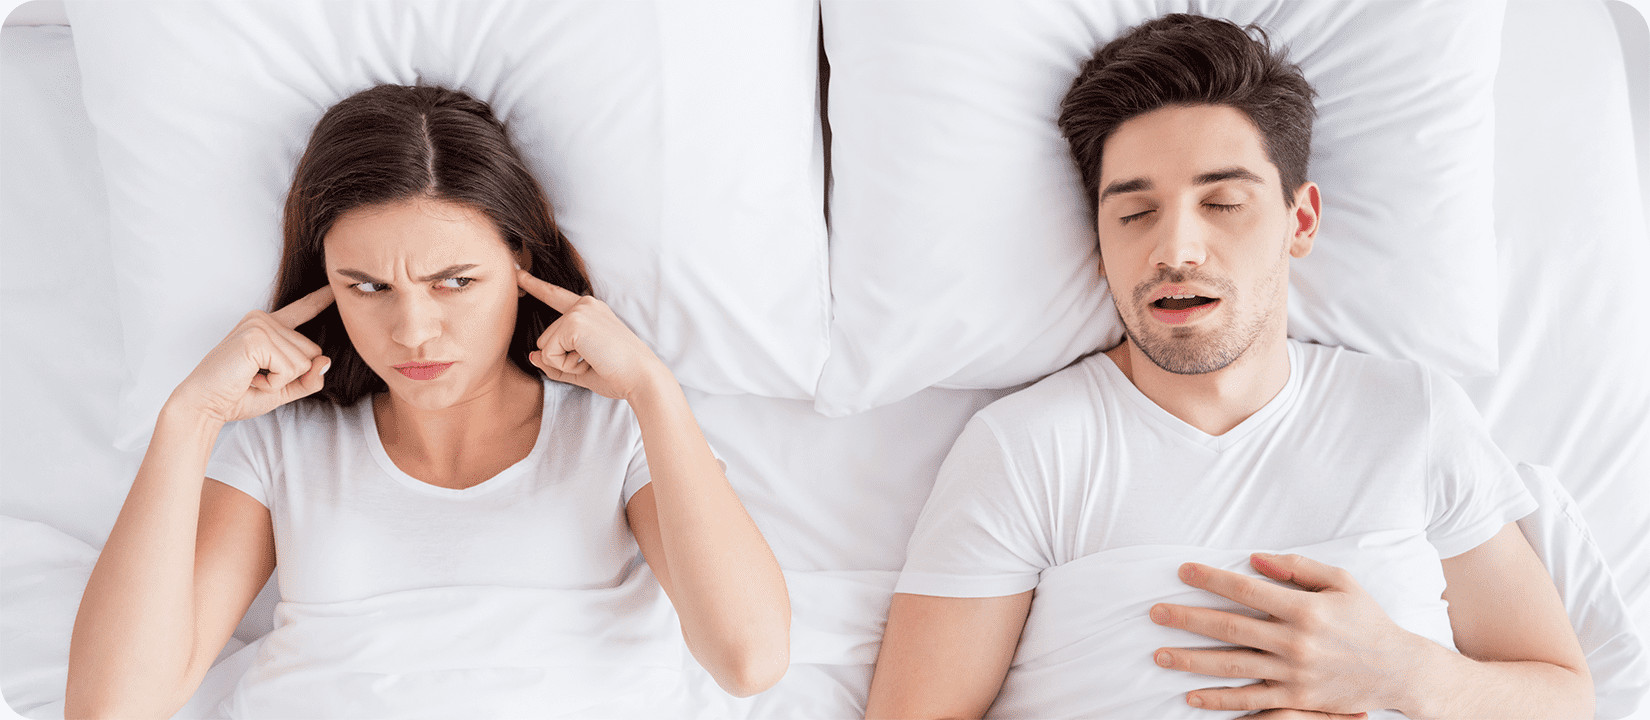 Дискомфорт у партнера по сну